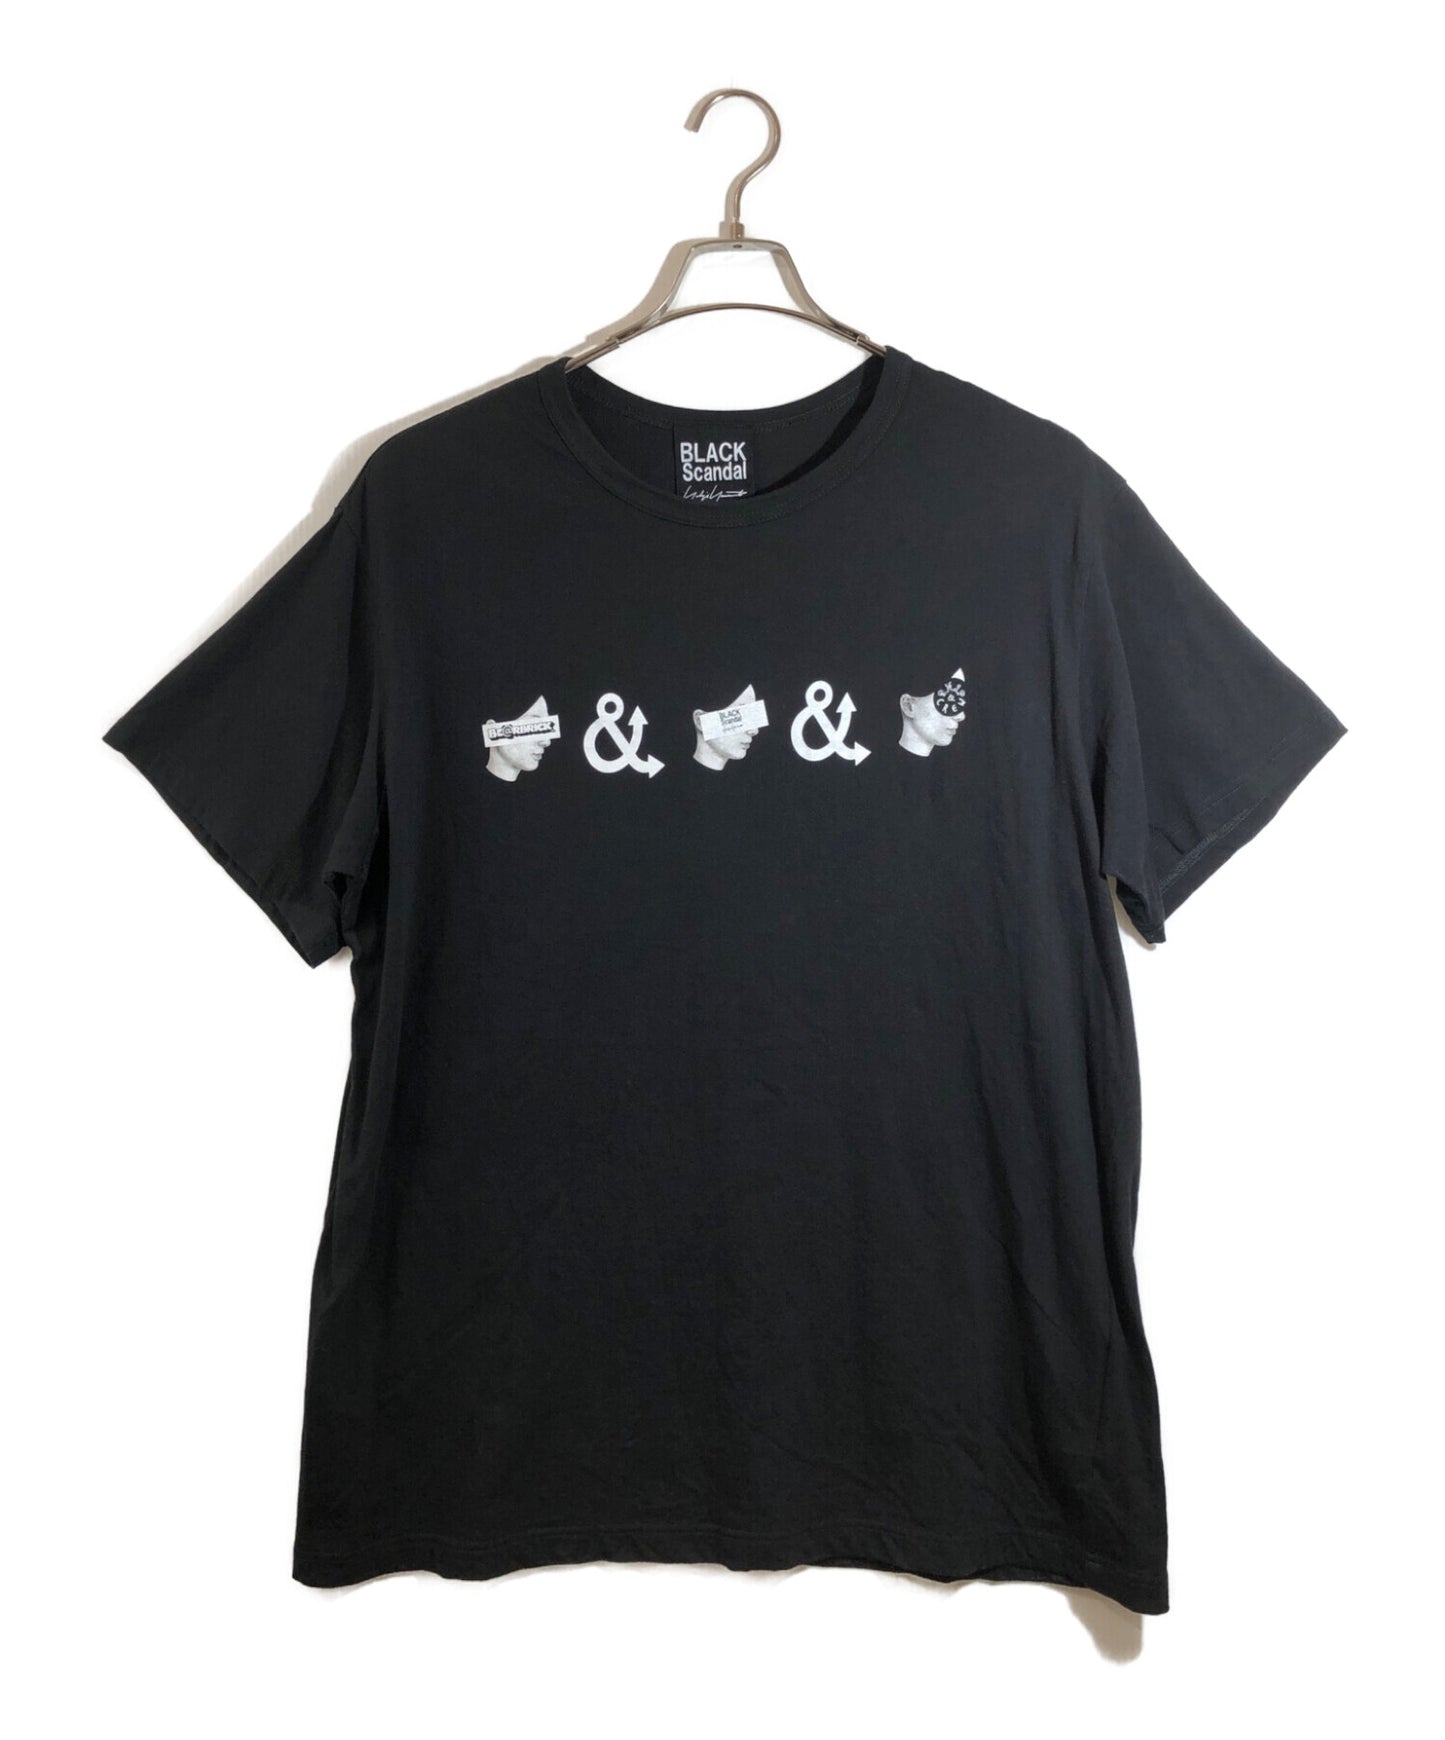 블랙 스캔들 yohji yamamoto 우리는 티셔츠 hg-t20-079에 있습니다